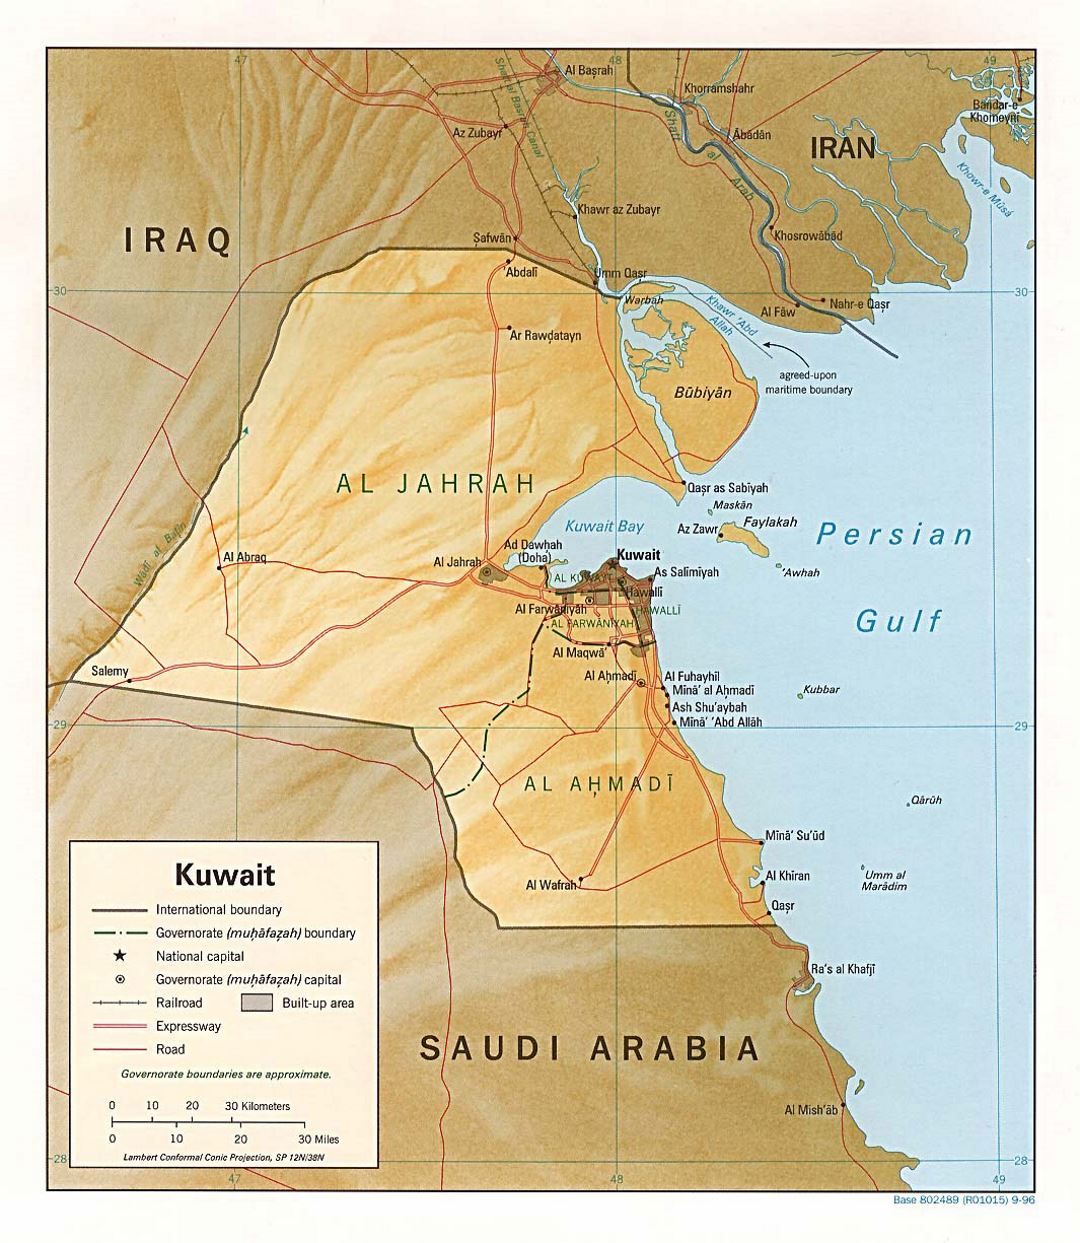 Detallado mapa político y administrativo de Kuwait con socorro, carreteras, ferrocarriles y ciudades - 1996